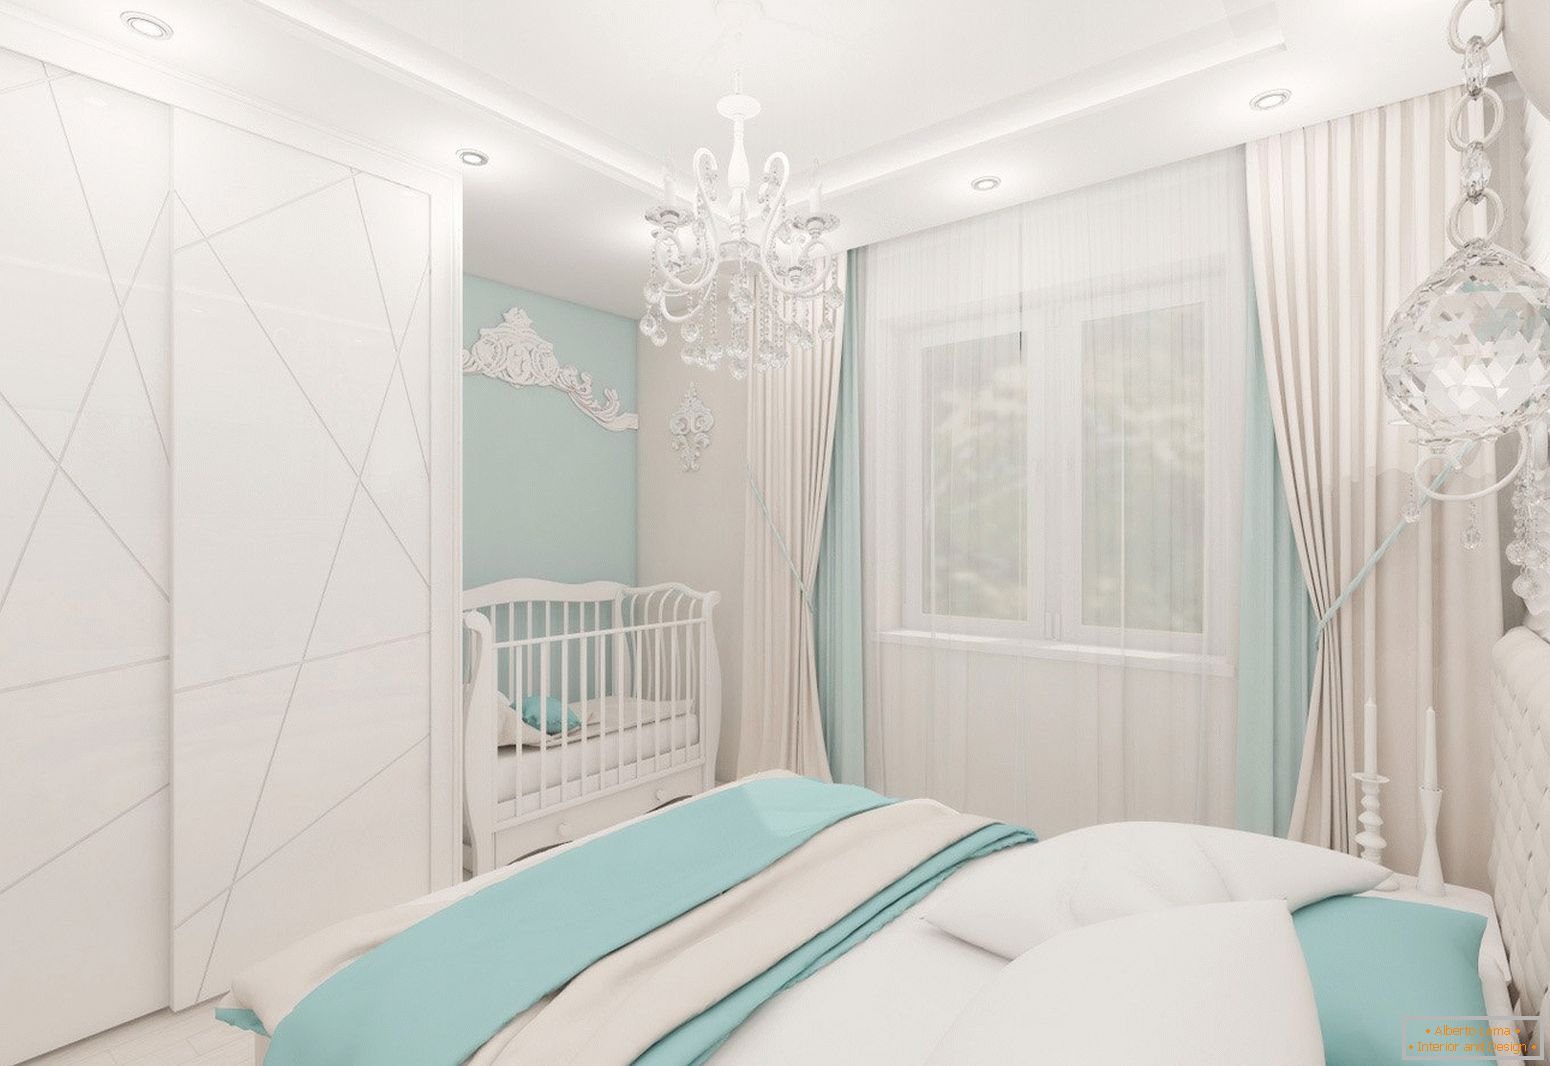 Спална соба дизајн во светли бои